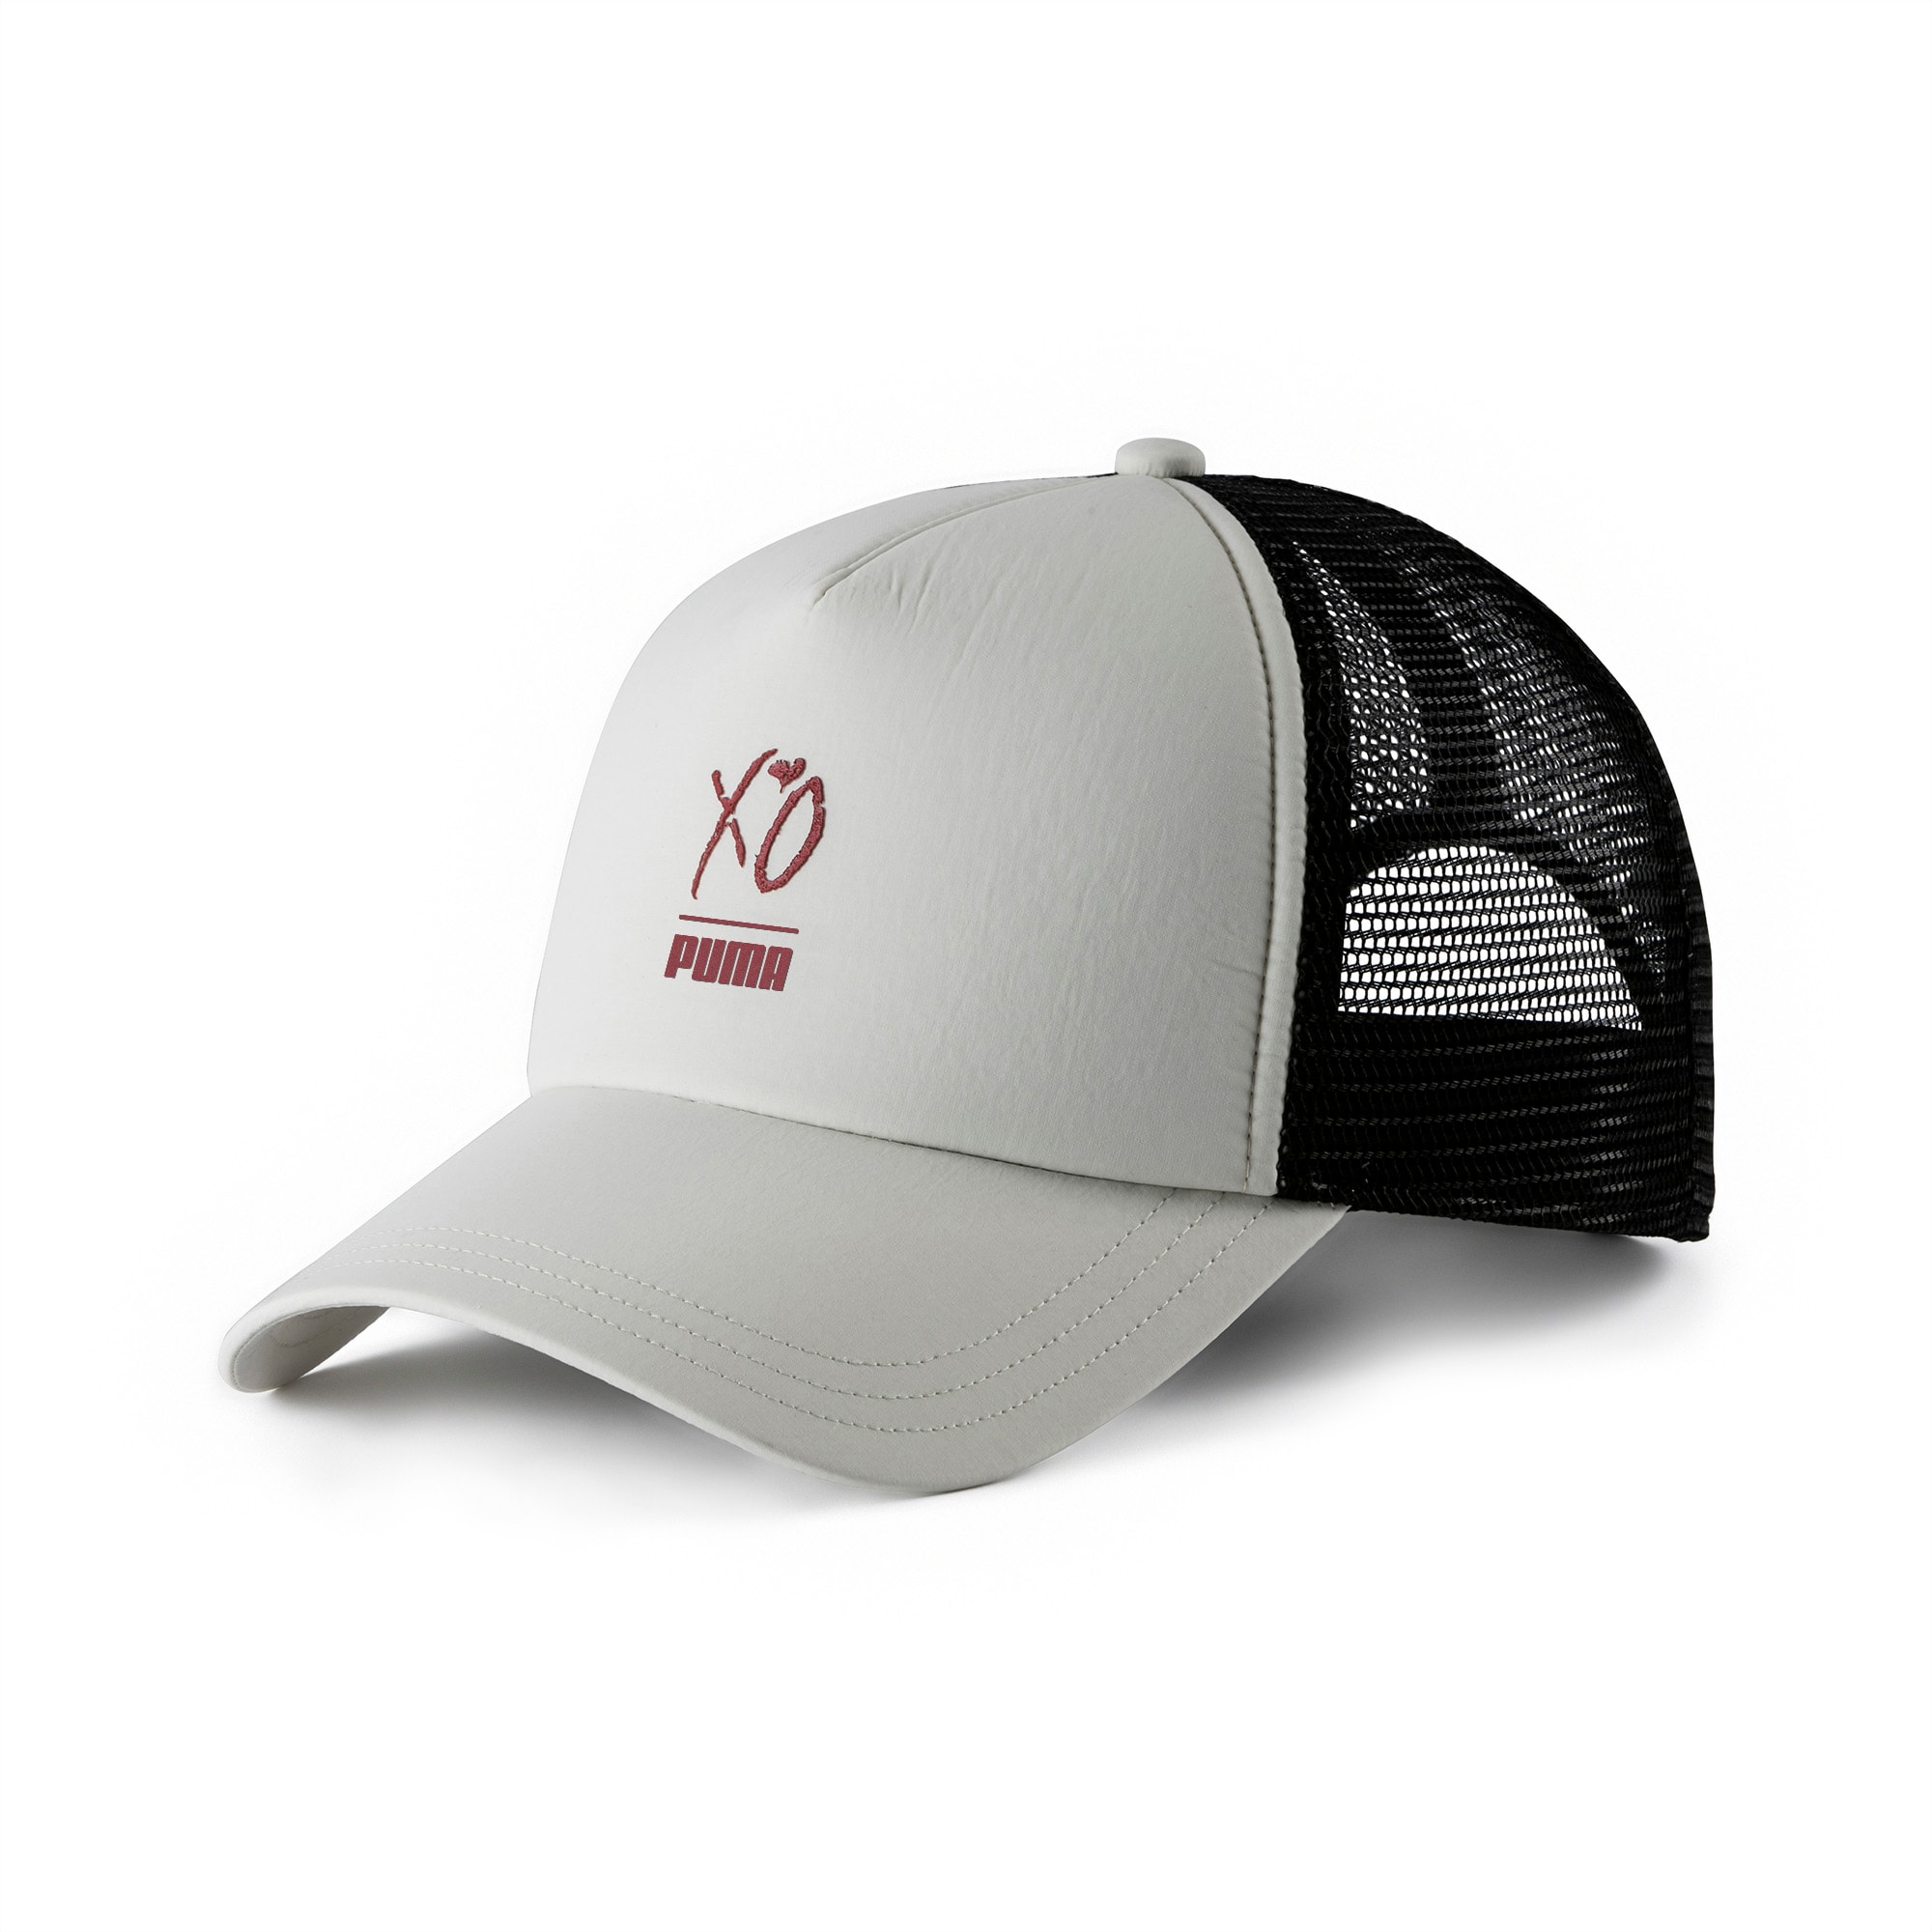 PUMA x XO Snapback Trucker Hat | PUMA Featured | PUMA United Kingdom